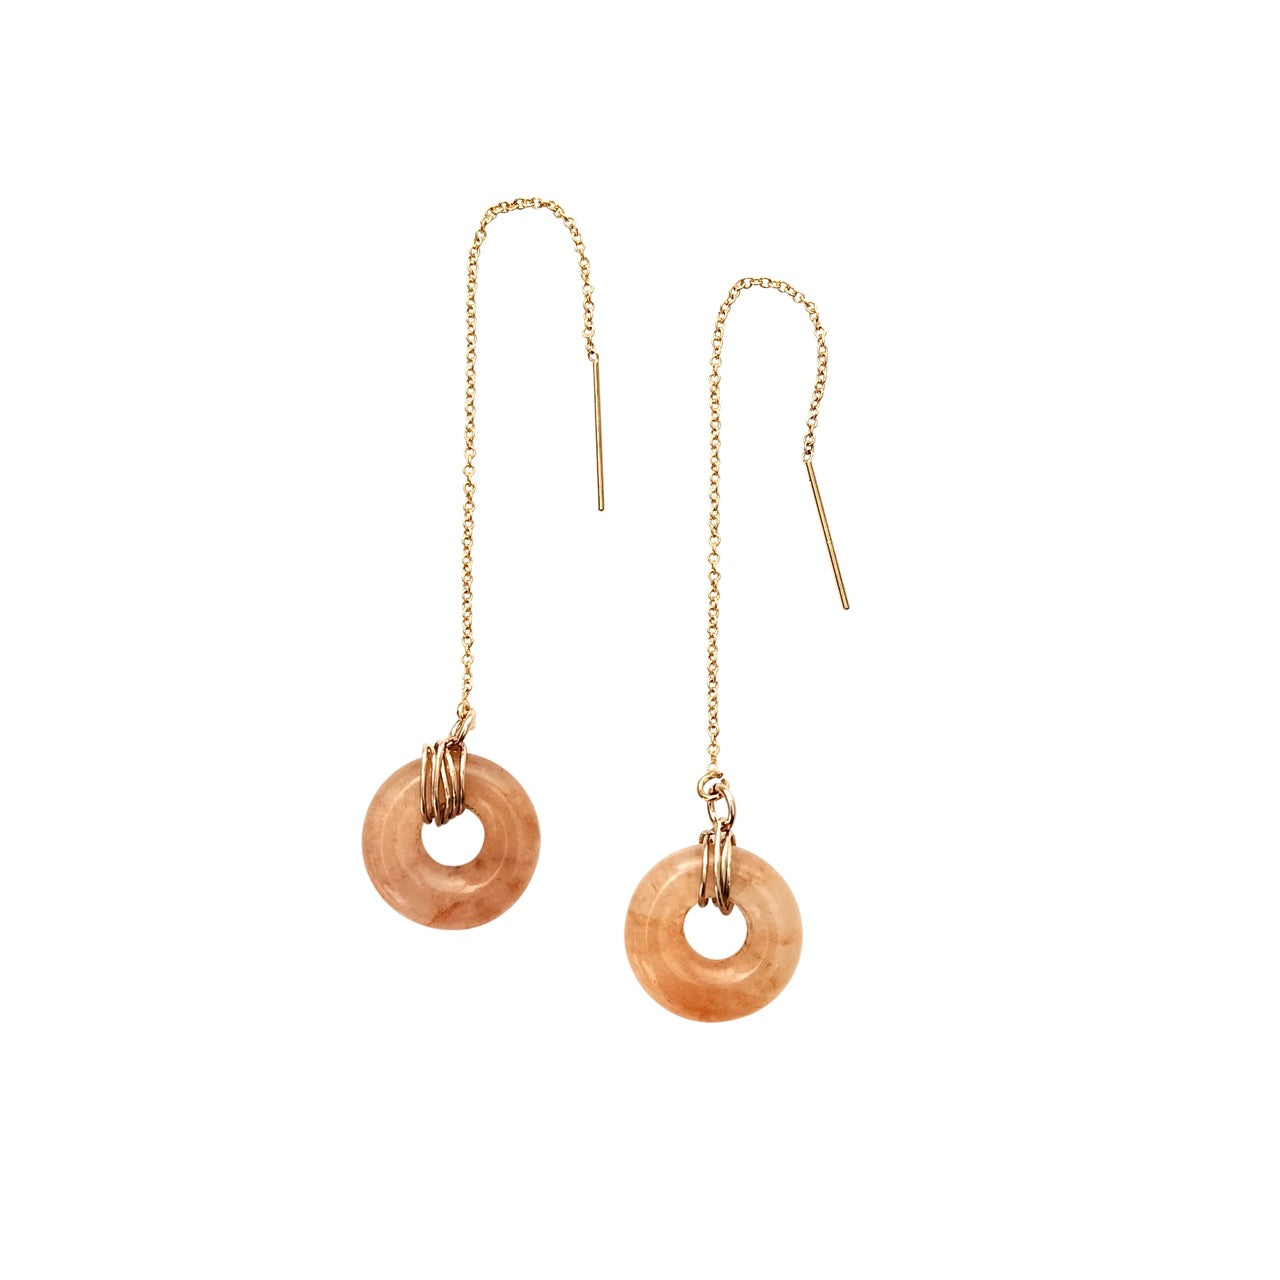 Orange gemstone earrings